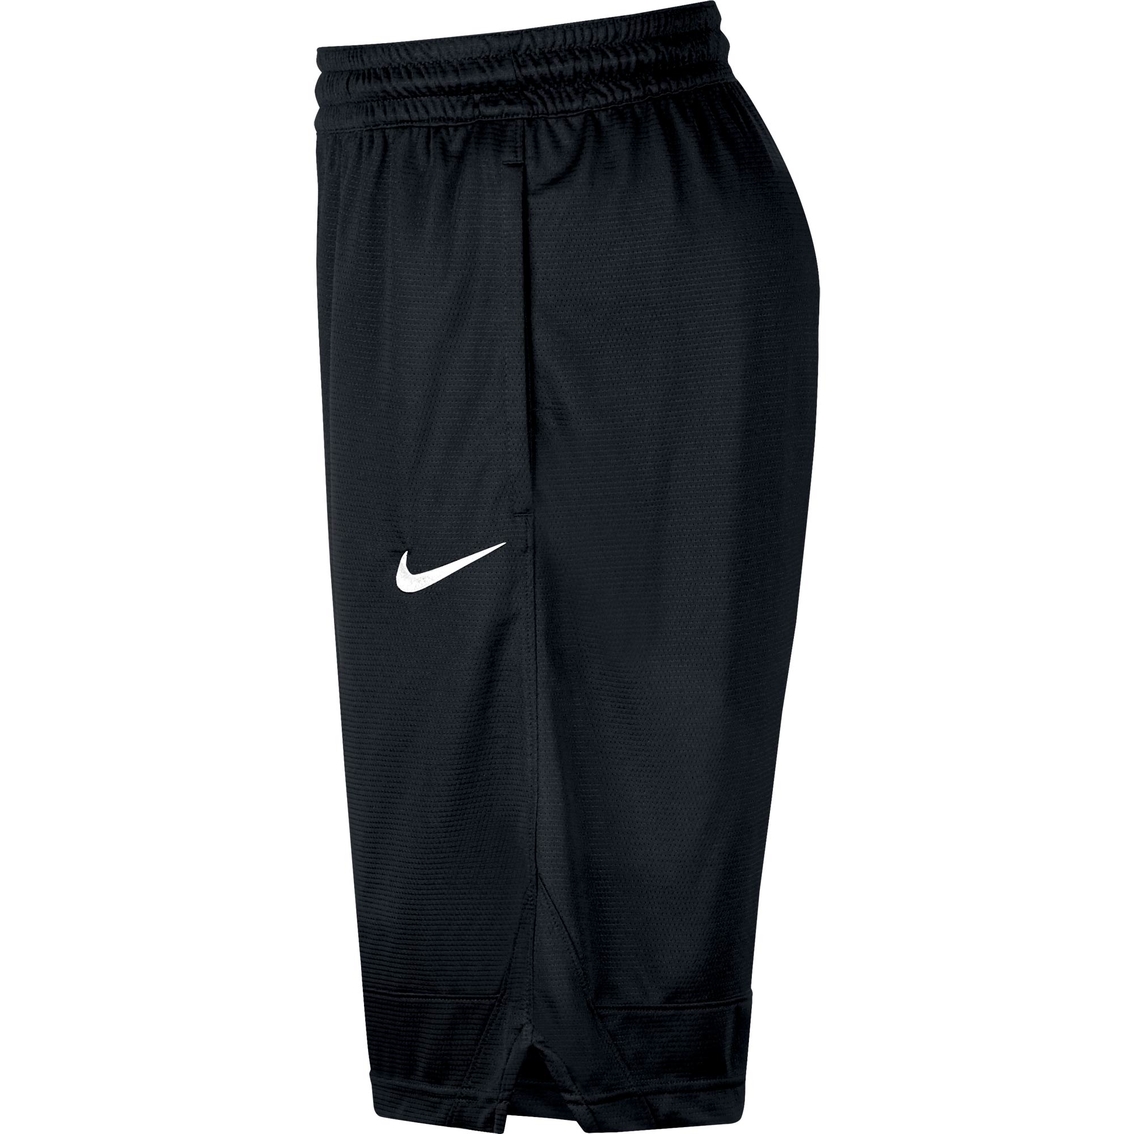 Nike Dry Icon Shorts - Image 3 of 3